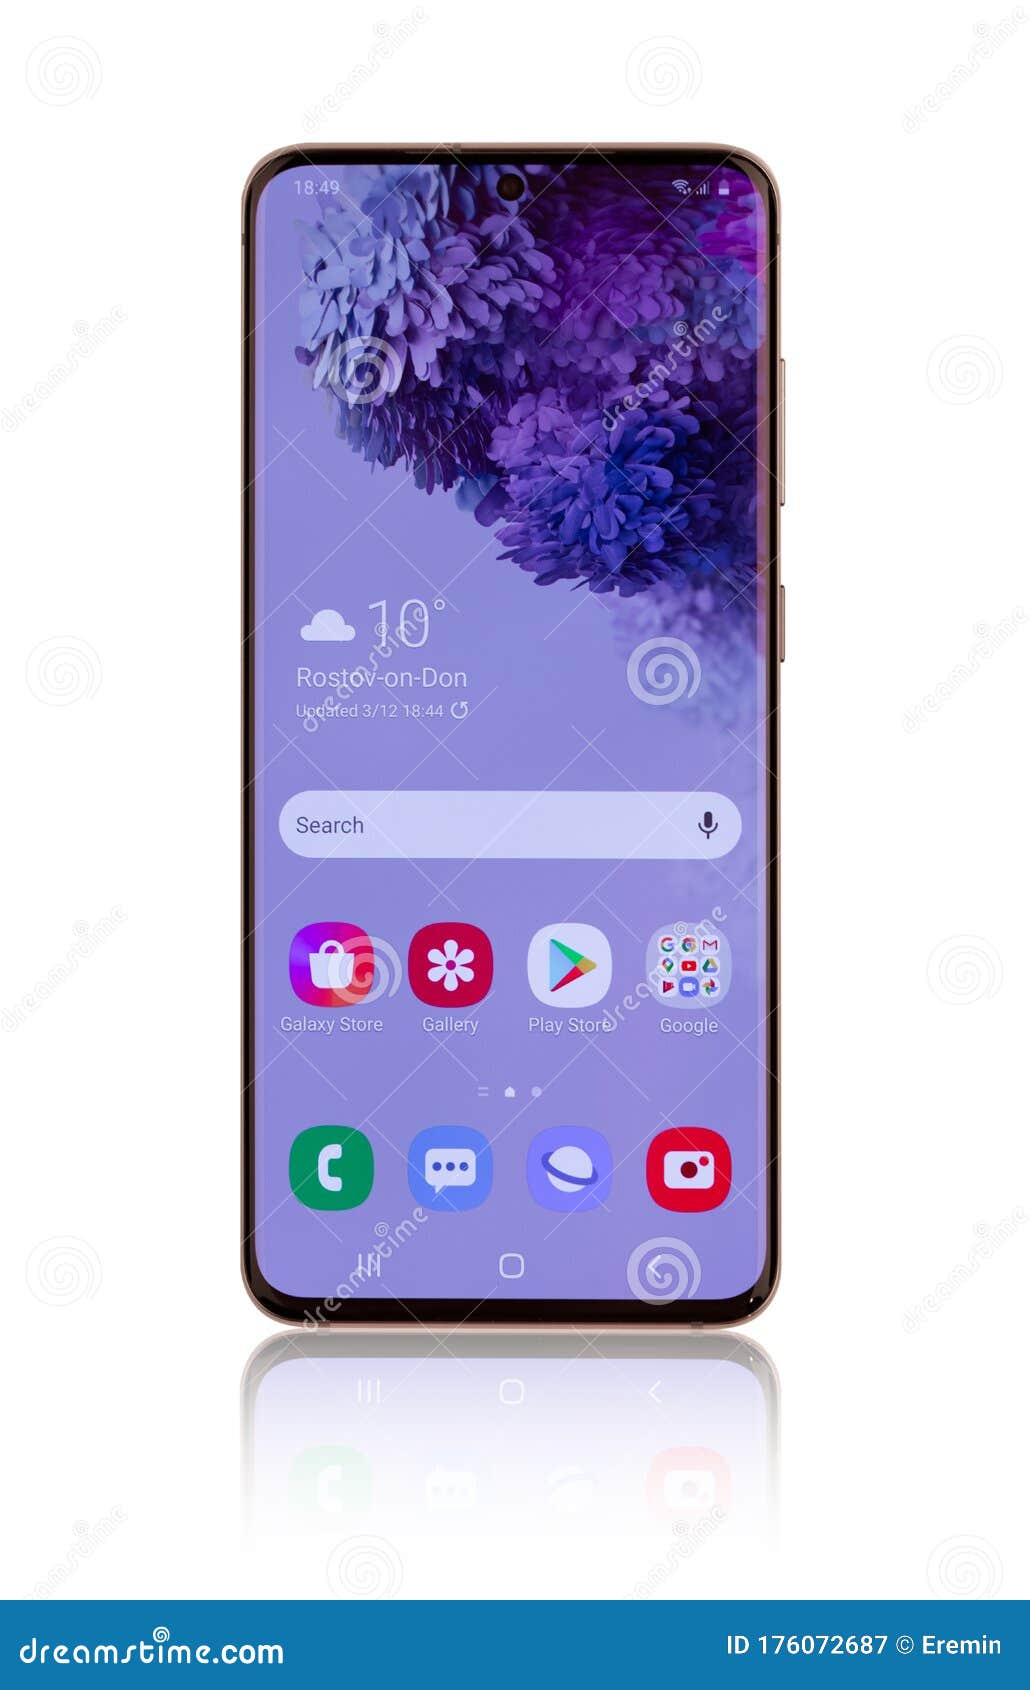 Nếu bạn đang tìm kiếm một thiết bị di động hoàn hảo, hãy chiêm ngưỡng hình ảnh Samsung Galaxy S20 đầy ấn tượng và chất lượng. Với thiết kế tinh tế, cấu hình mạnh mẽ và nhiều tính năng tiên tiến, Samsung Galaxy S20 chắc chắn sẽ là sự lựa chọn hoàn hảo cho bạn!